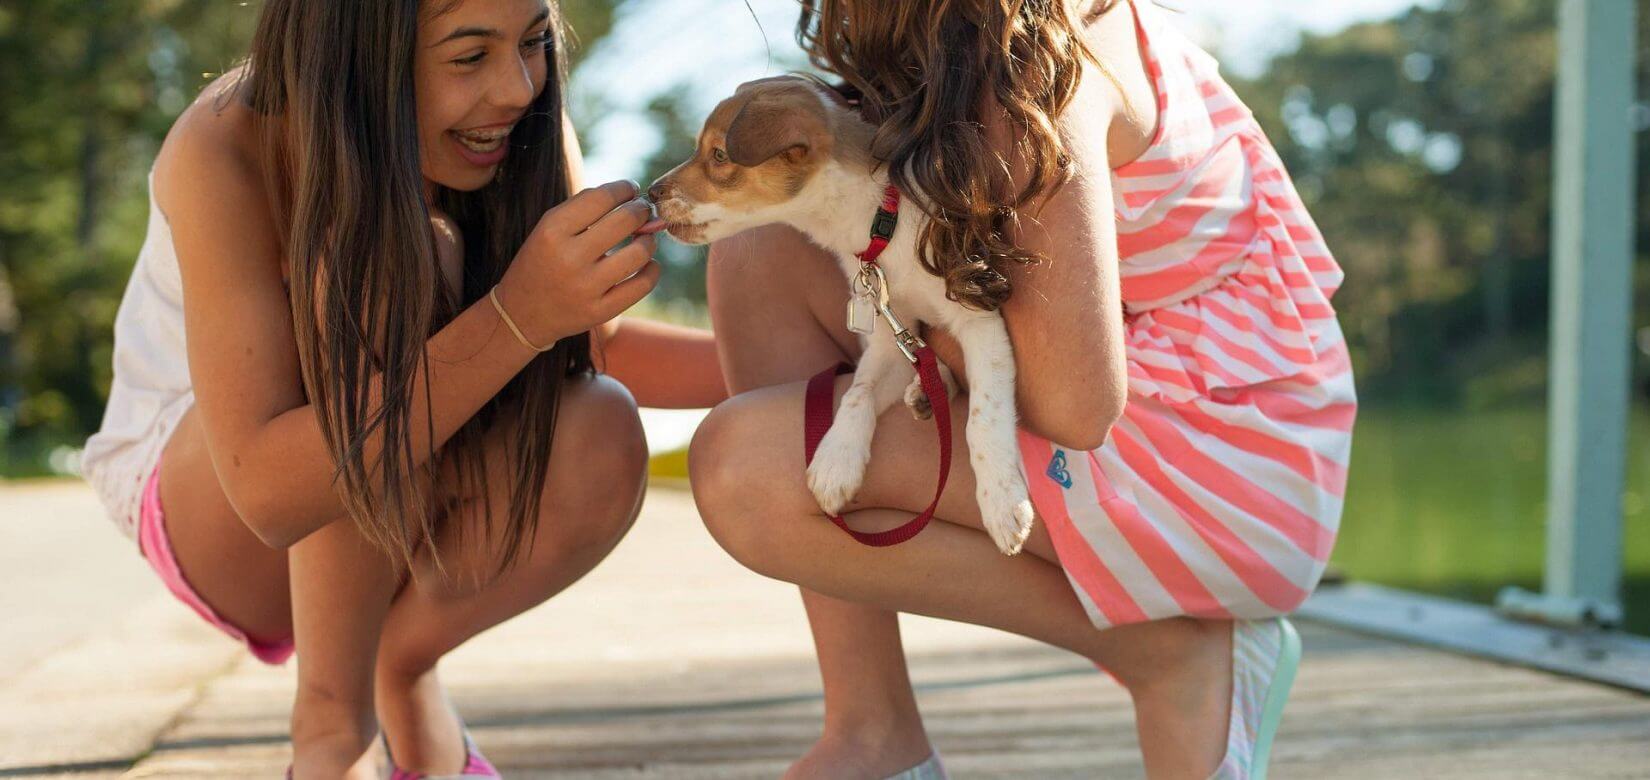 Ηπατίτιδα σε παιδιά: Ερευνάται αν η αύξηση στα κρούσματα συνδέεται με τους σκύλους